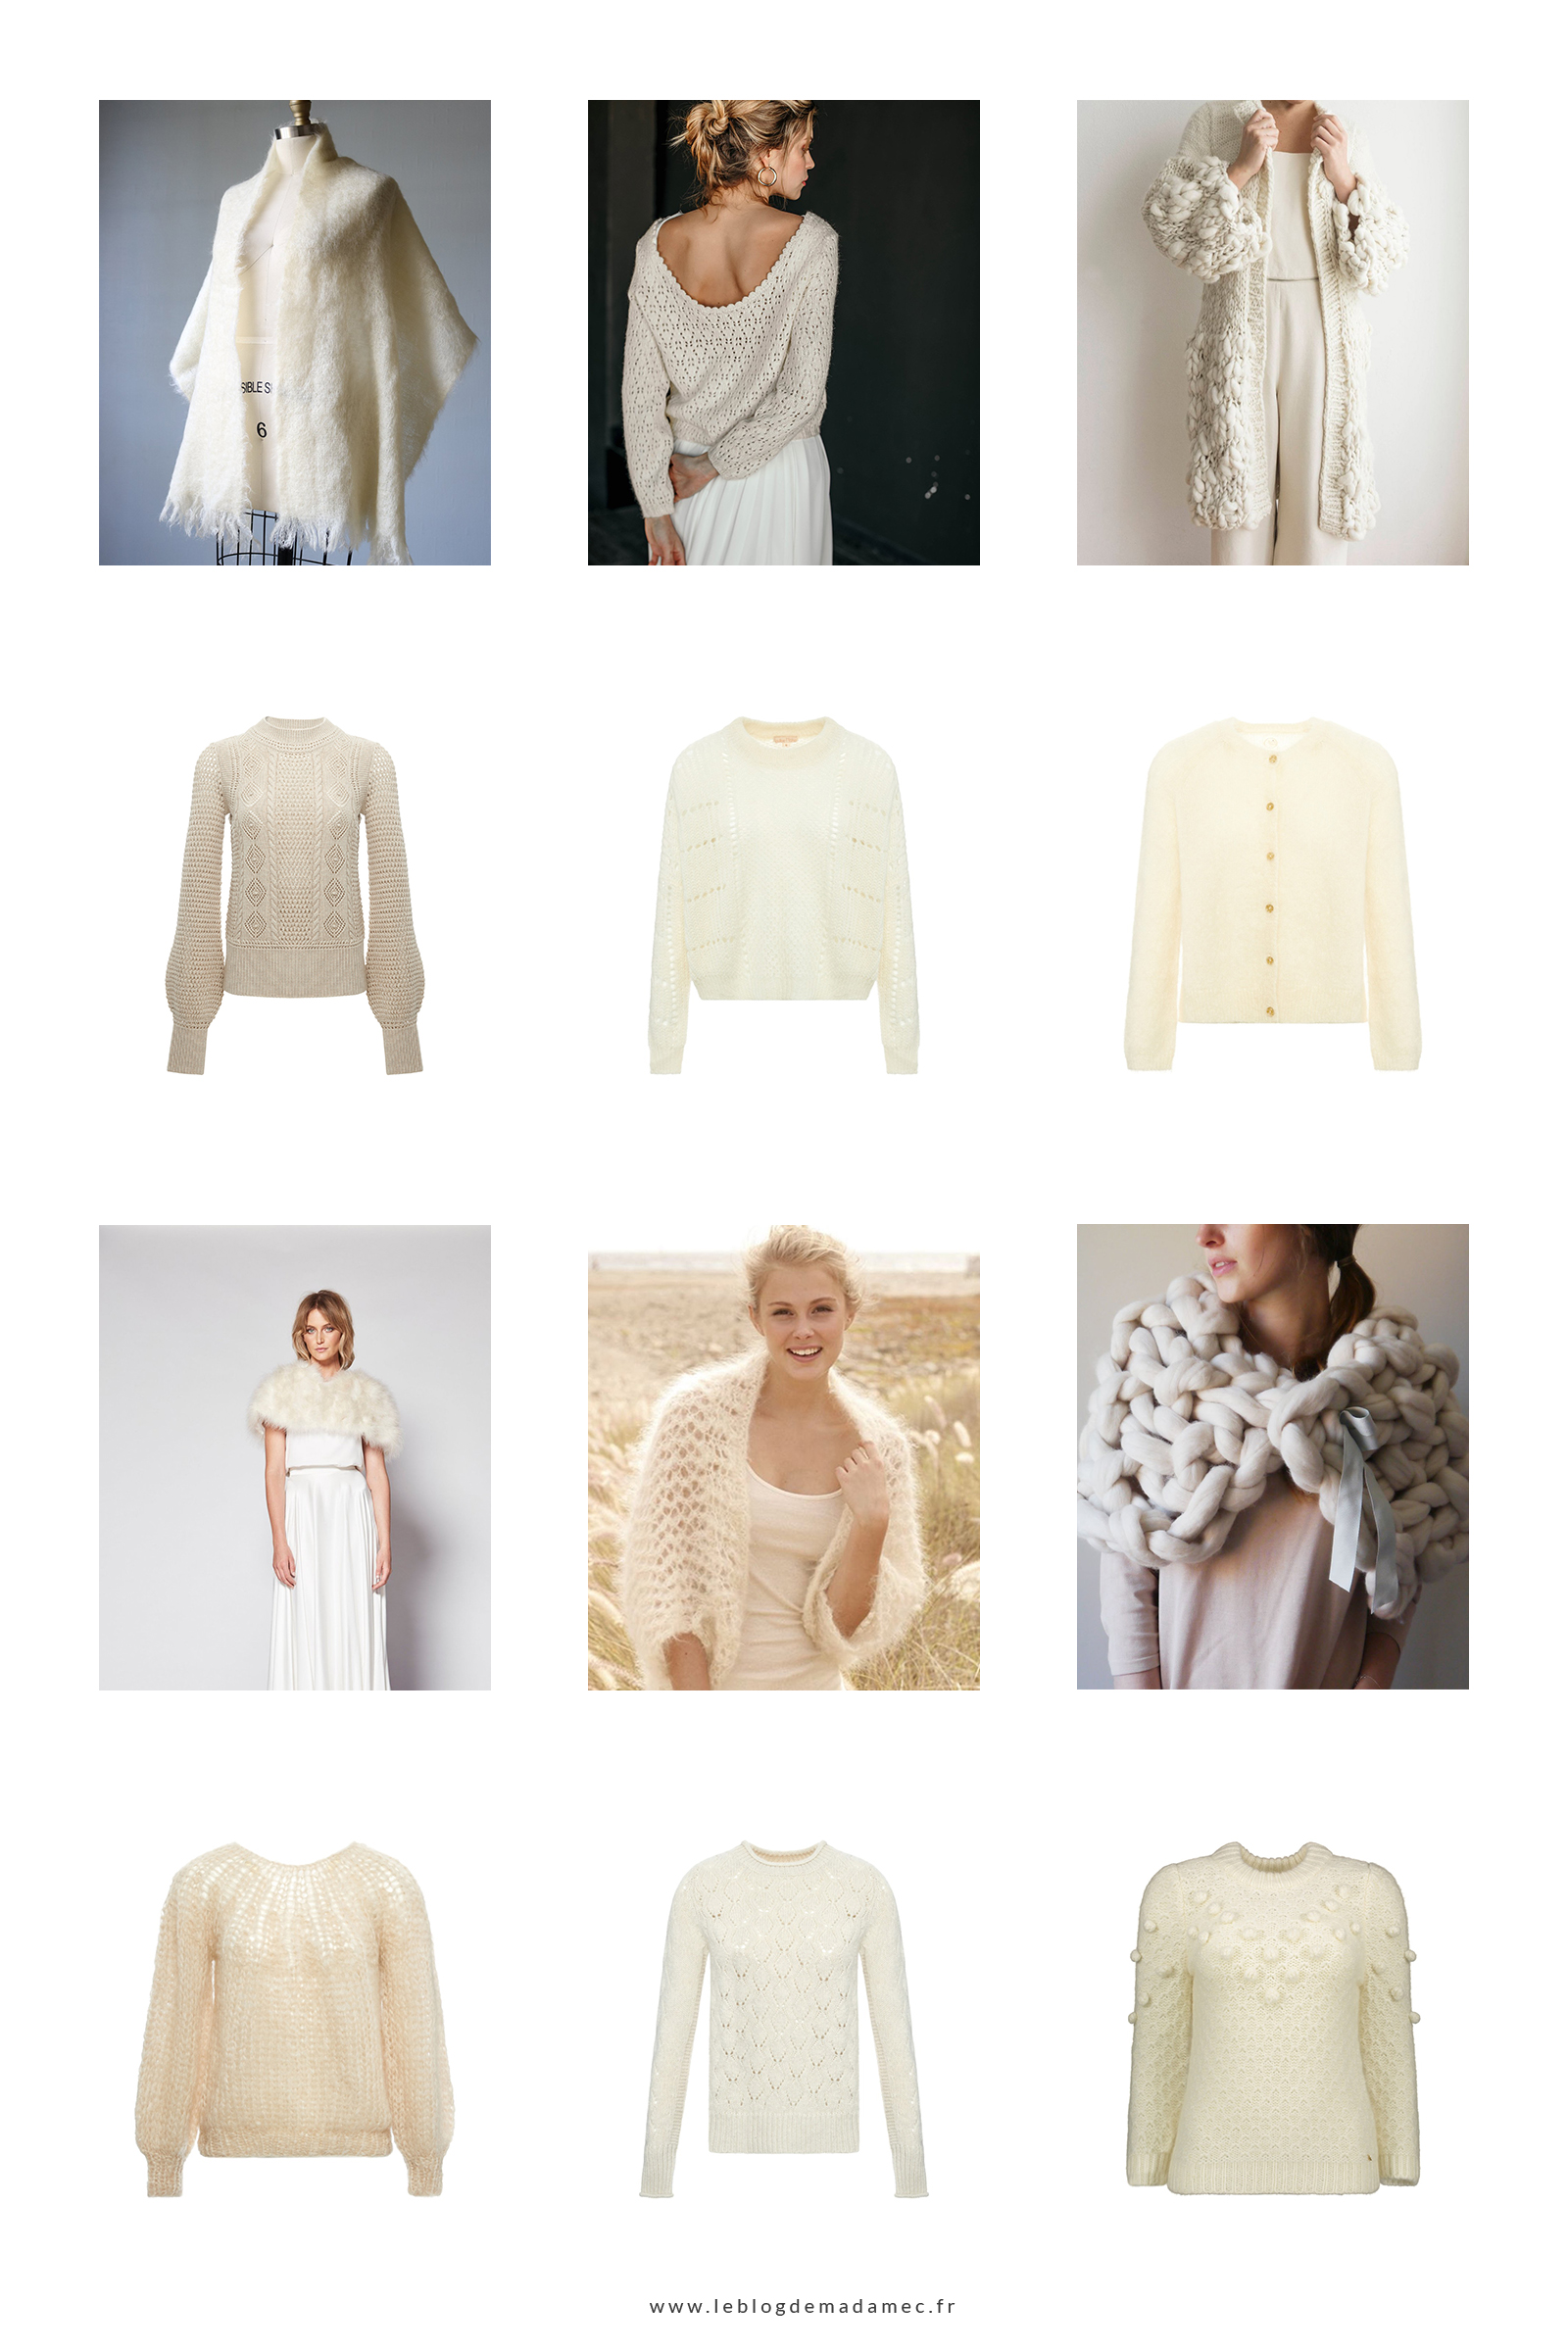 12 accessoires pour réchauffer avec style votre robe de mariée - Blog Mariage Madame C